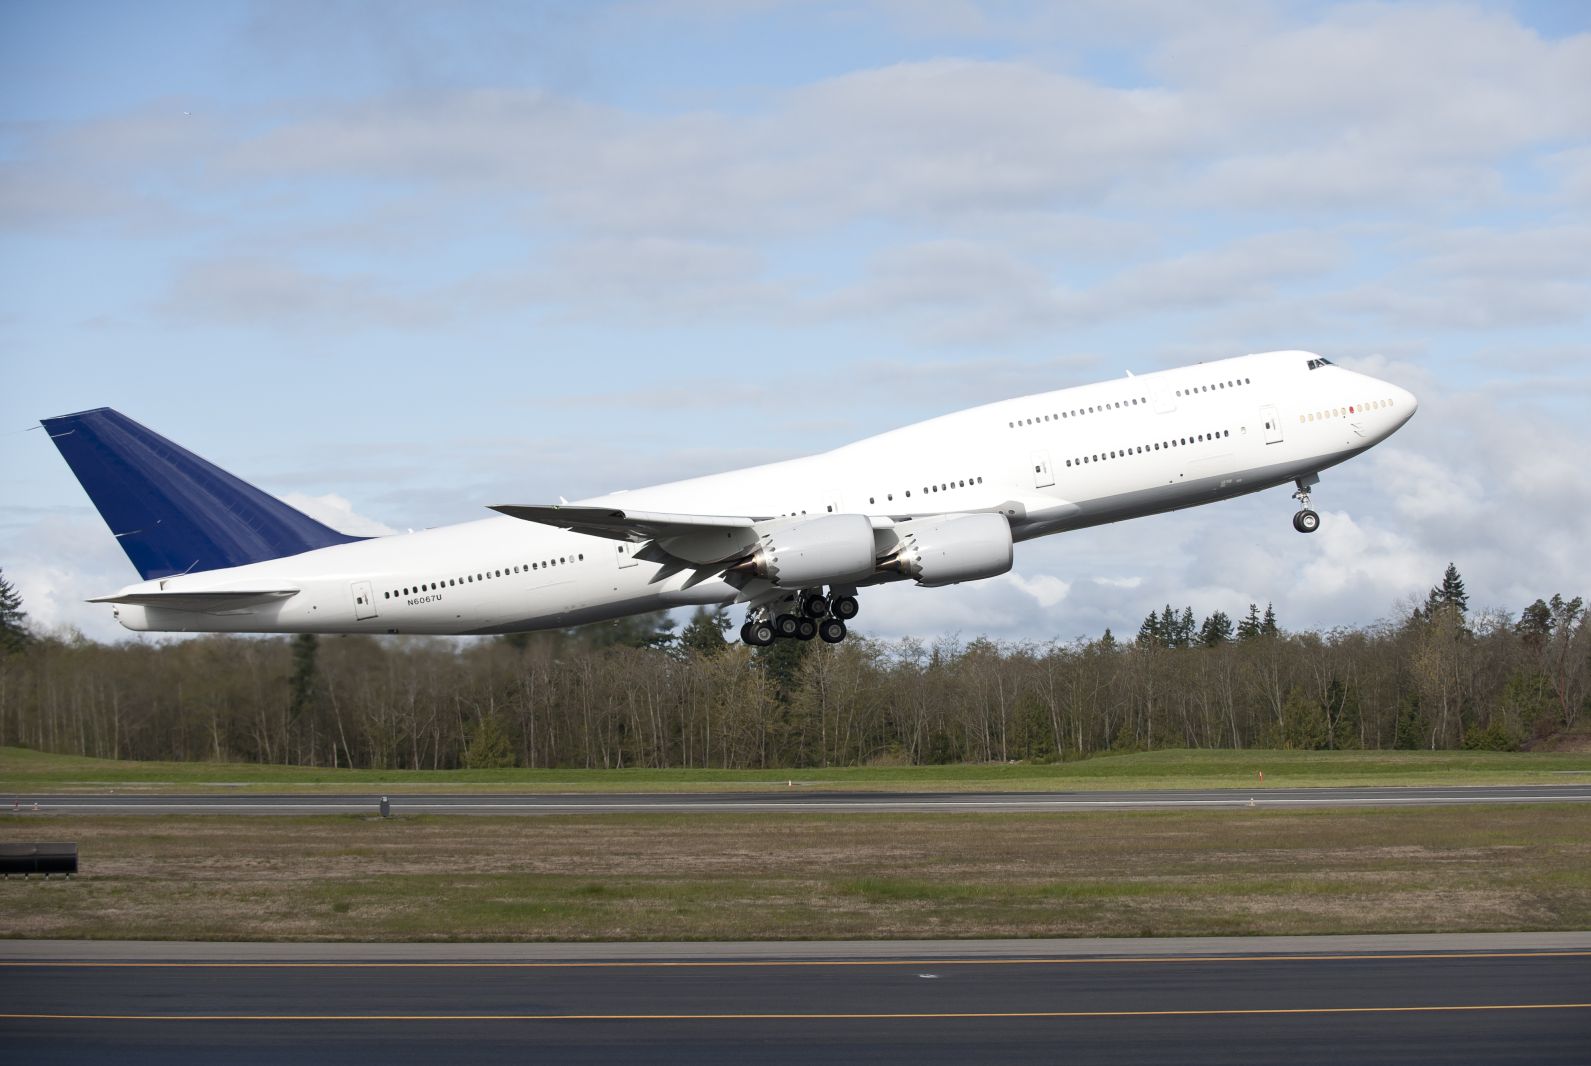 Kevesebb négyhajtóműves óriás kell a piacnak, nos a 747-esek megrendelése eléggé elapadt